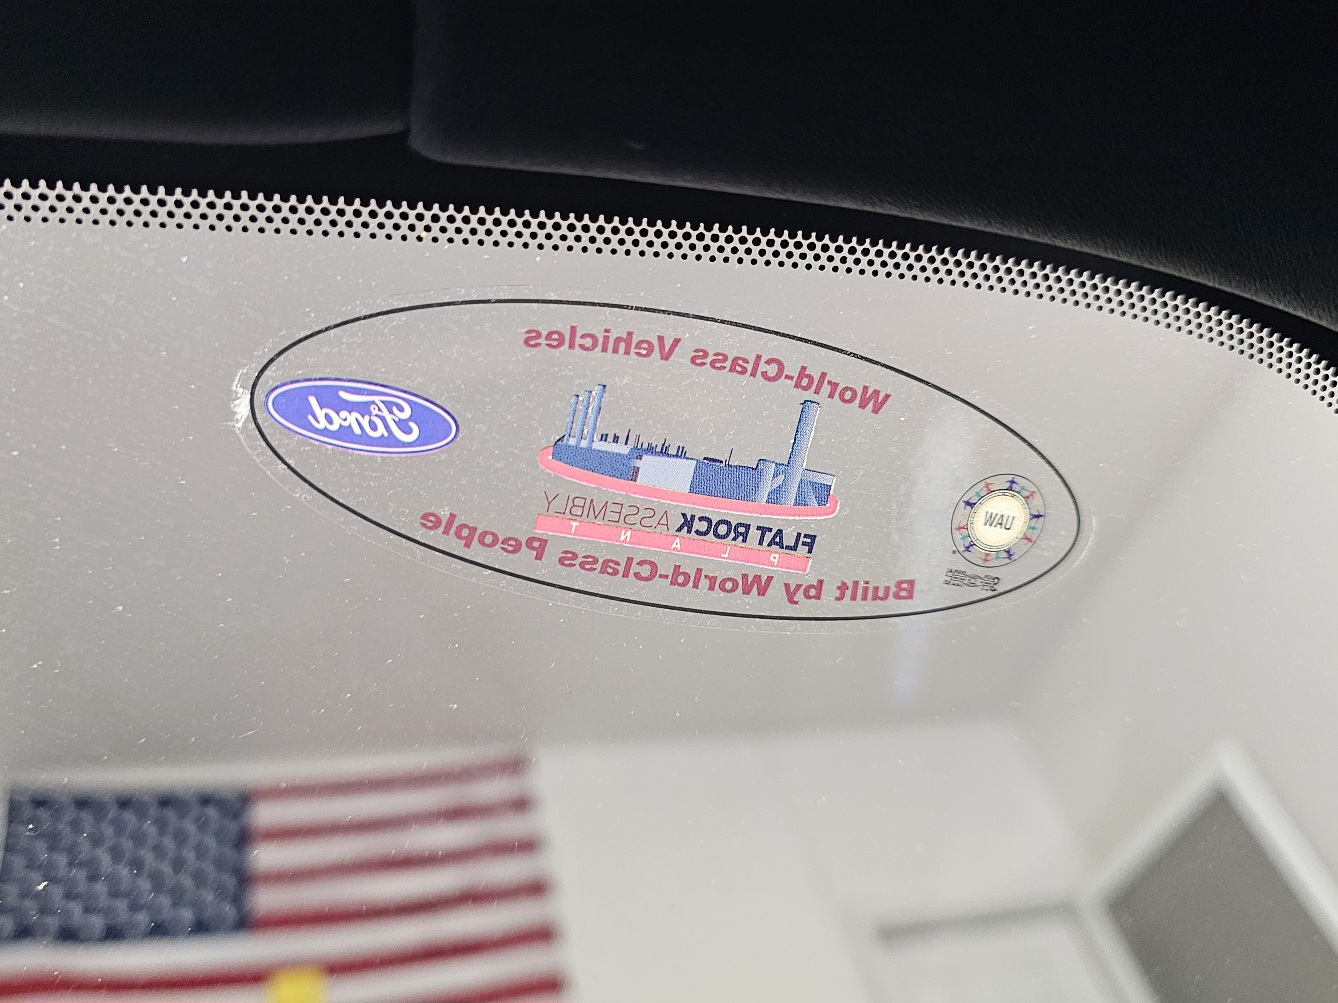 S650 Mustang Flat Rock sticker on w/s 1000012989